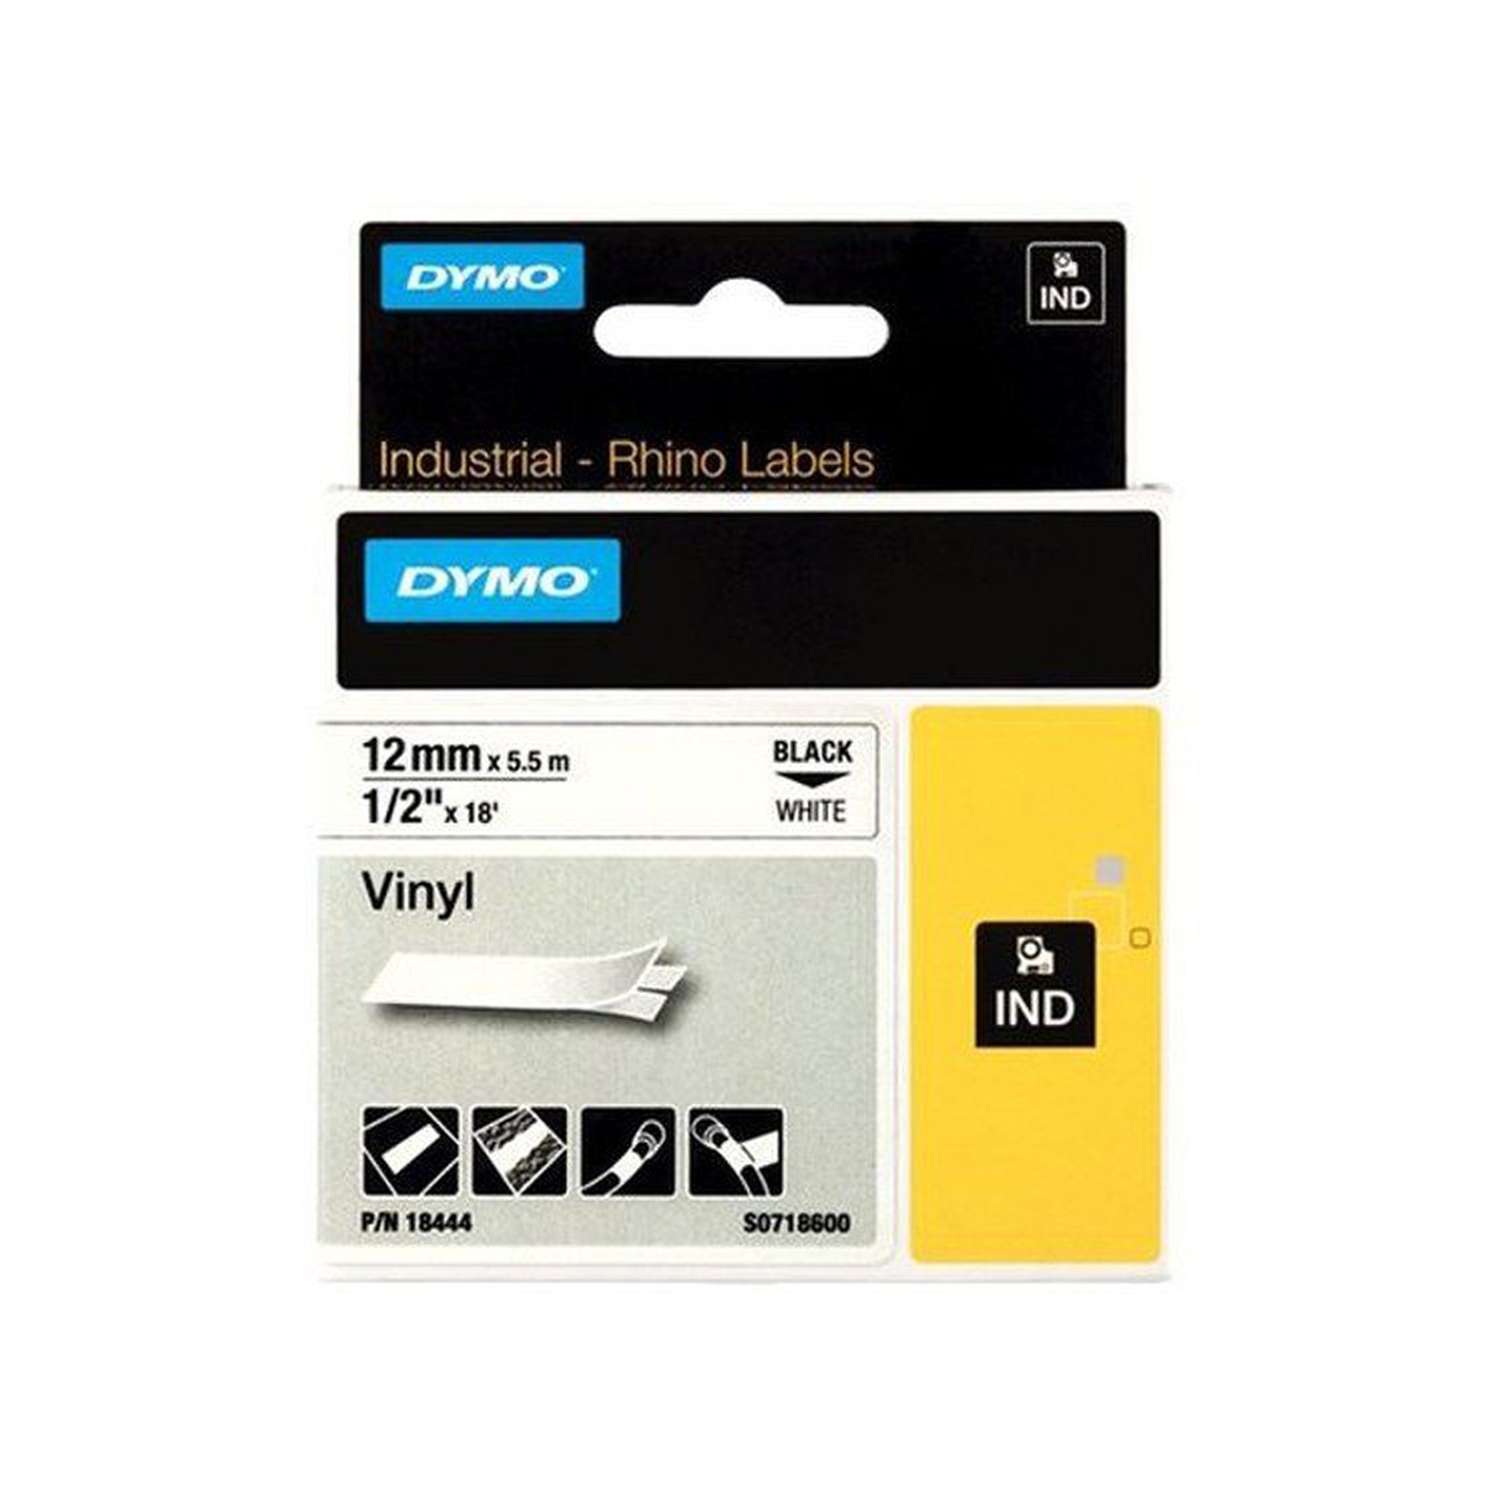 Картридж Dymo 18444/S0718600 для принтера этикеток, 12 мм x 5,5 м, черный шрифт на белой ленте